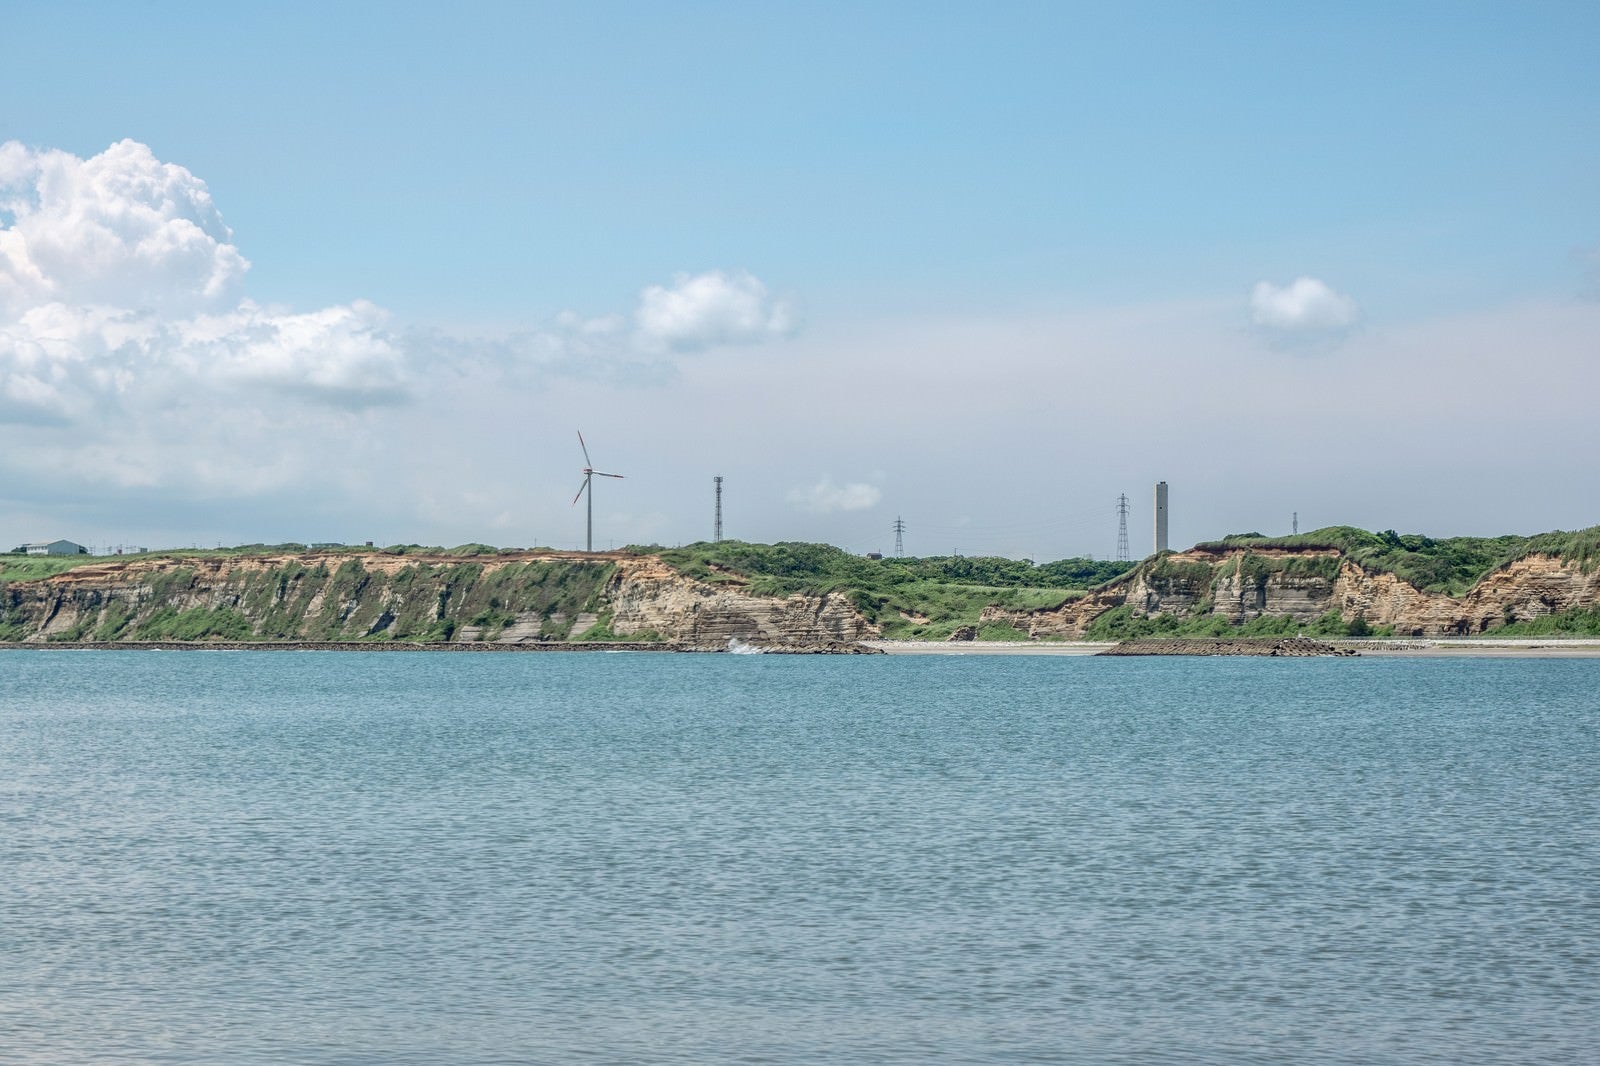 「屛風ヶ浦の海食崖と風力発電」の写真